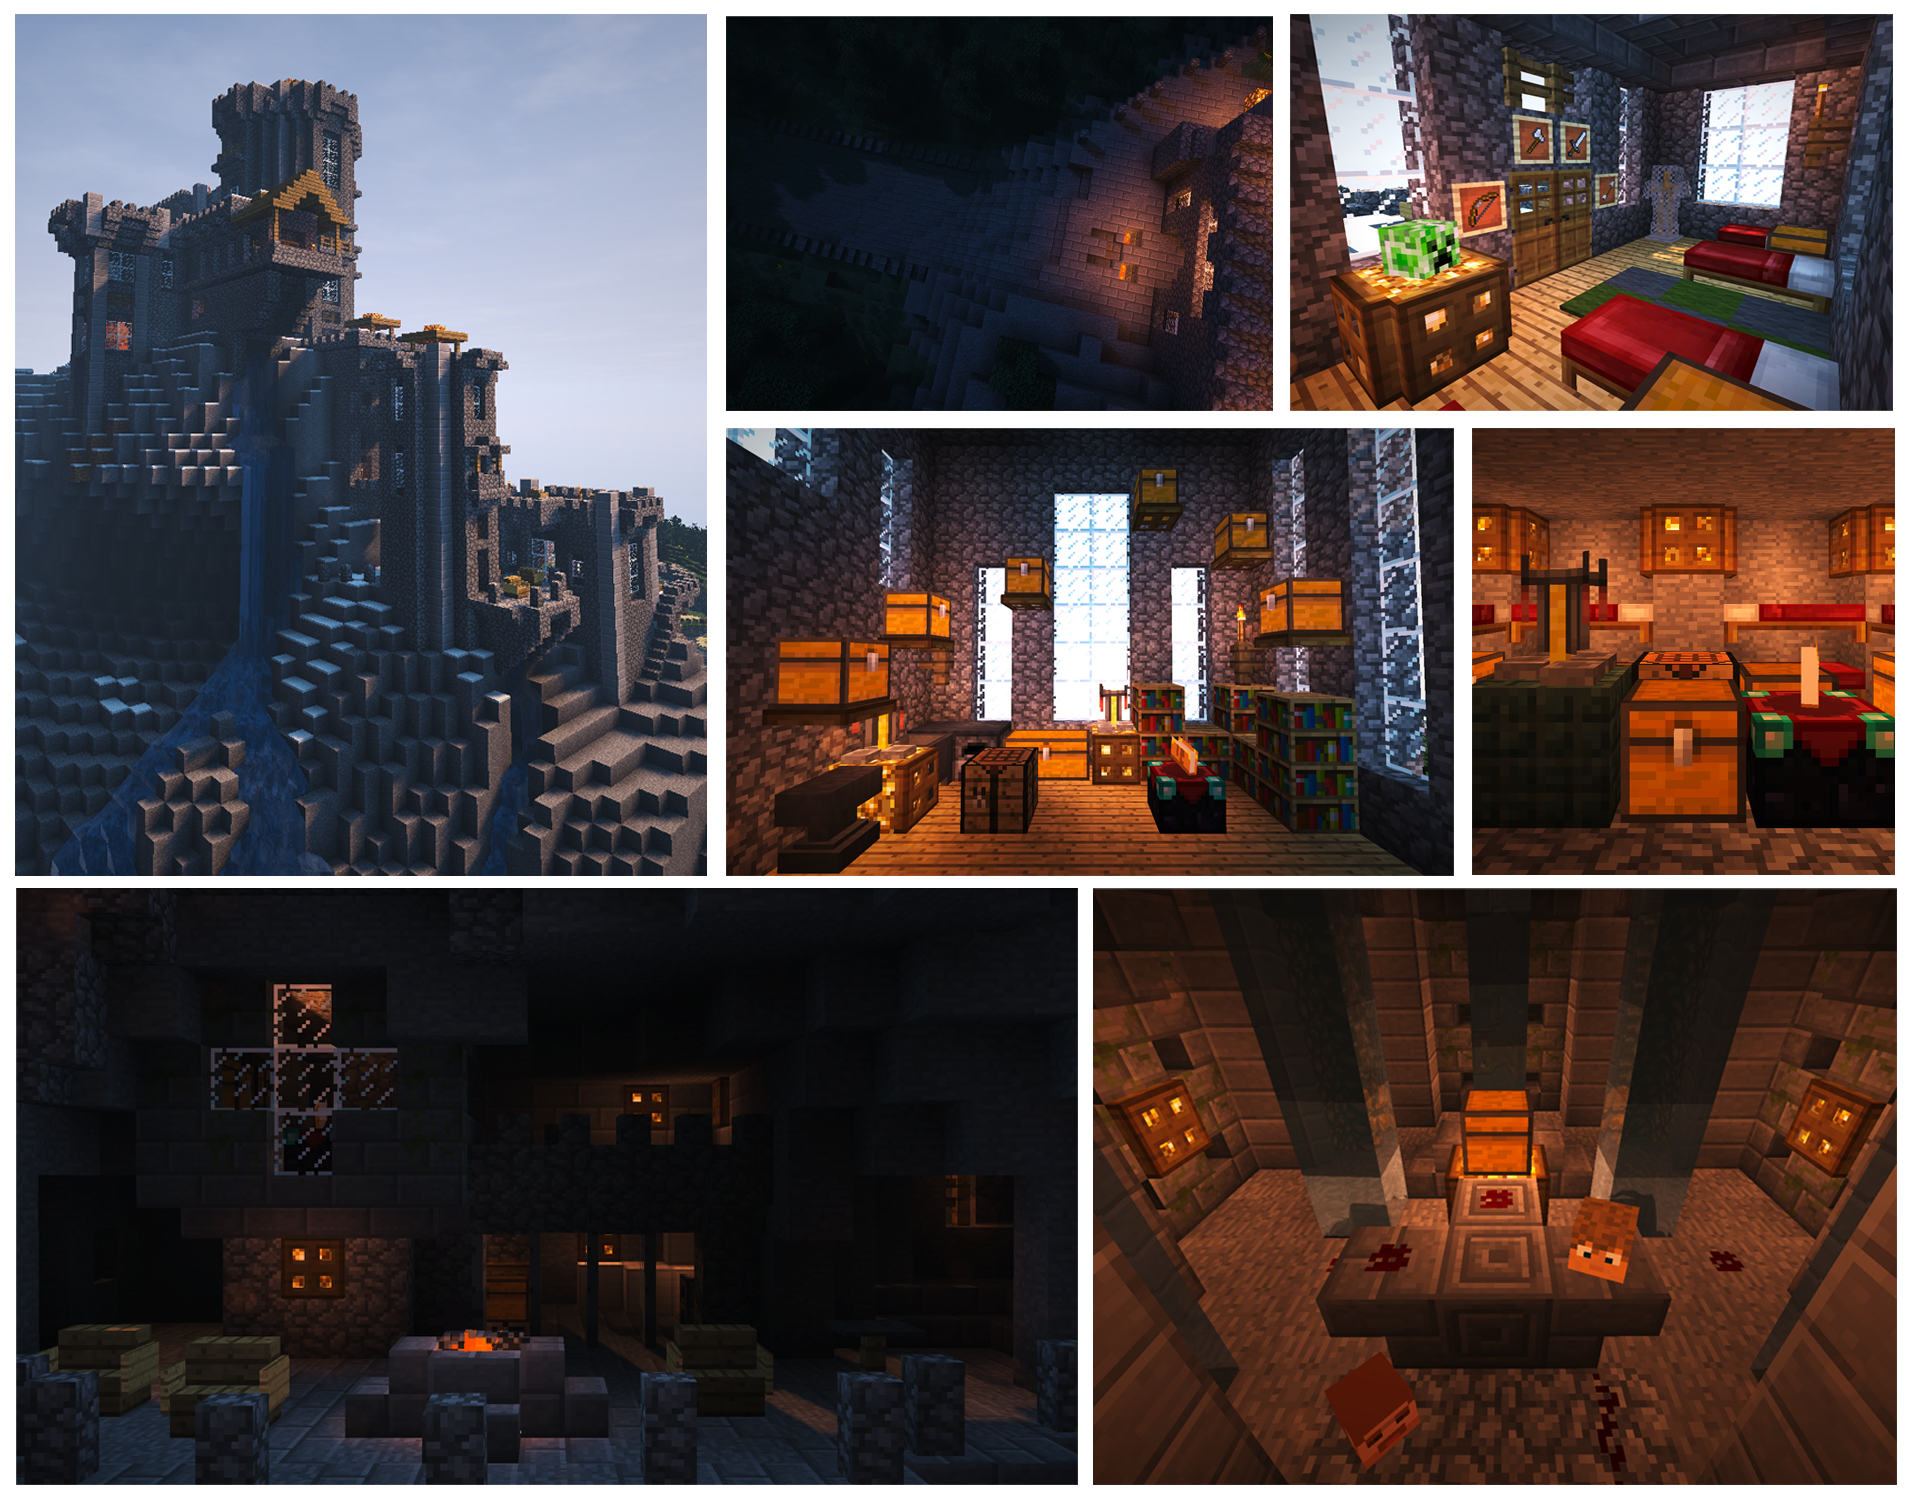 Minecraft - Nether Castle by Ludolik on DeviantArt